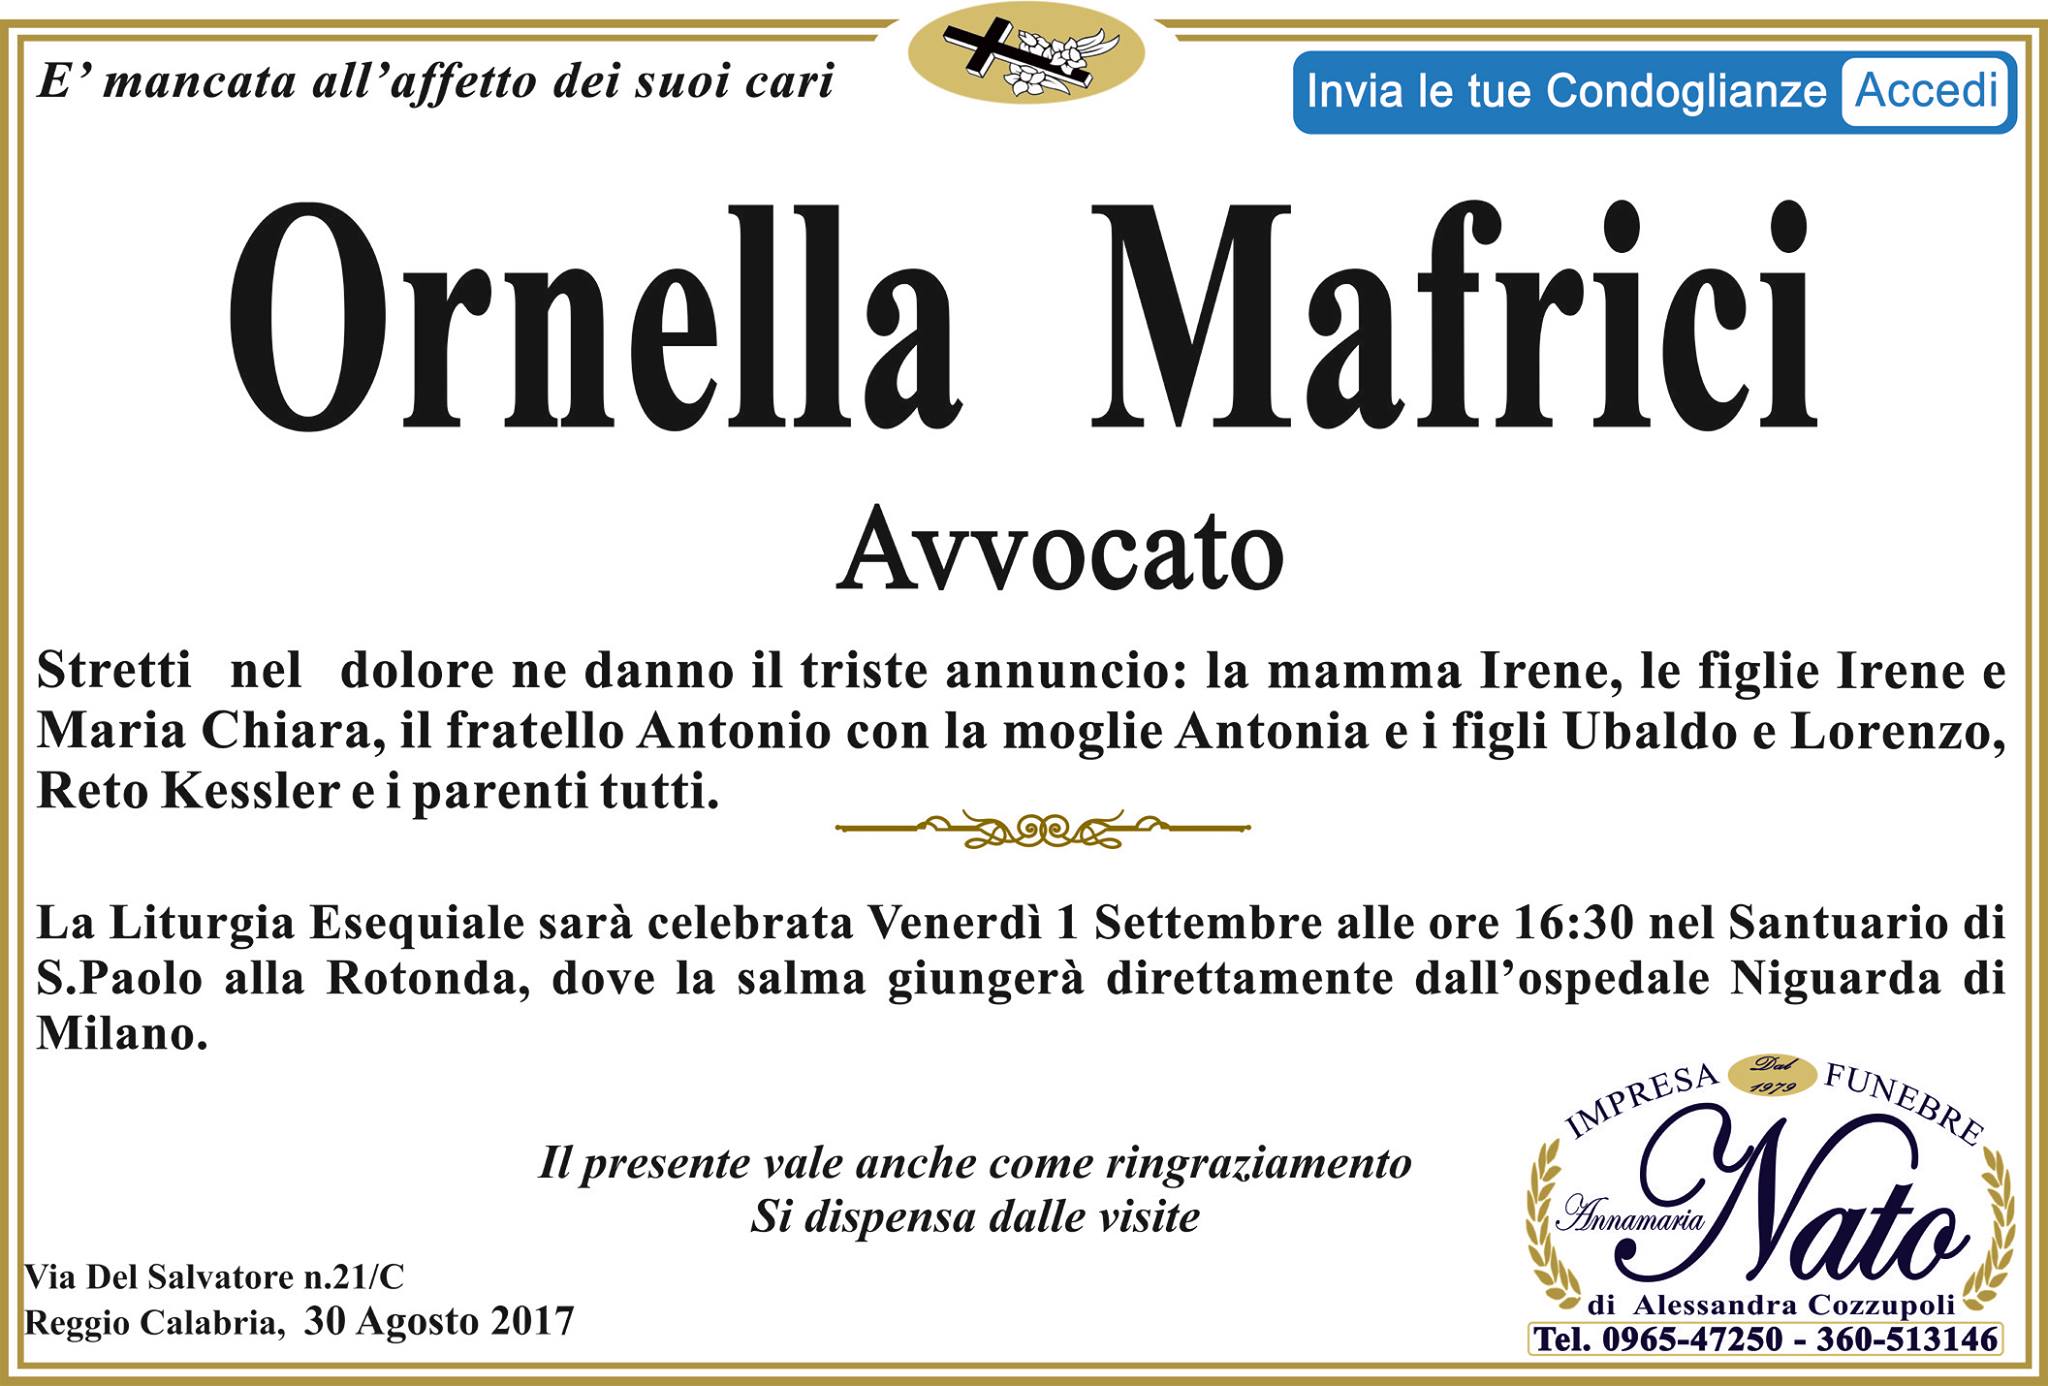 Avvocato Ornella Mafrici